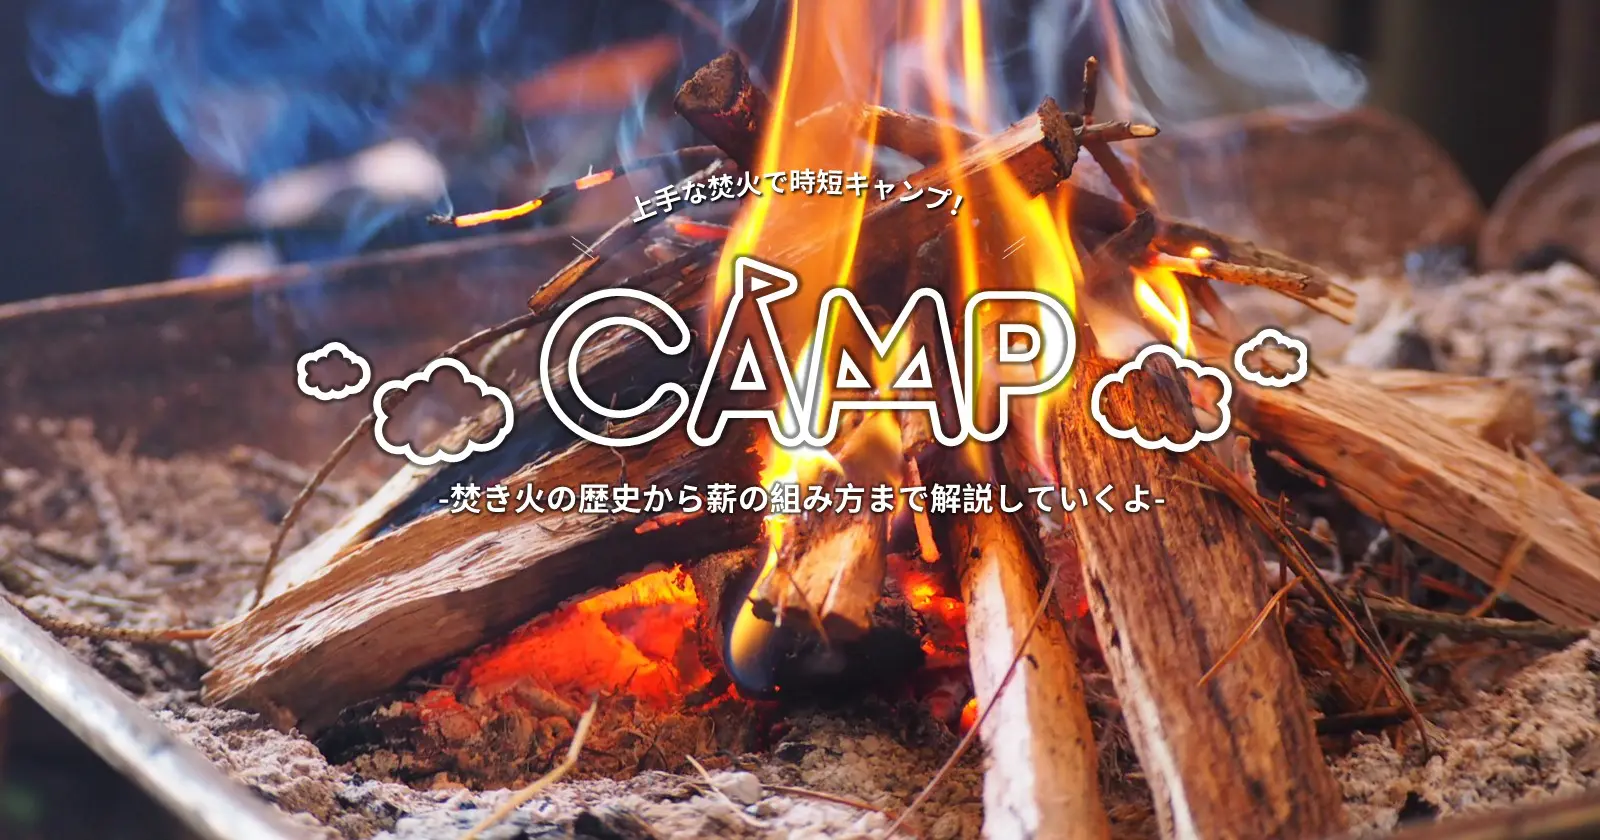 焚き火の歴史から薪の組み方まで解説していくよ Takibi タキビ キャンプ アウトドアの総合情報サイト